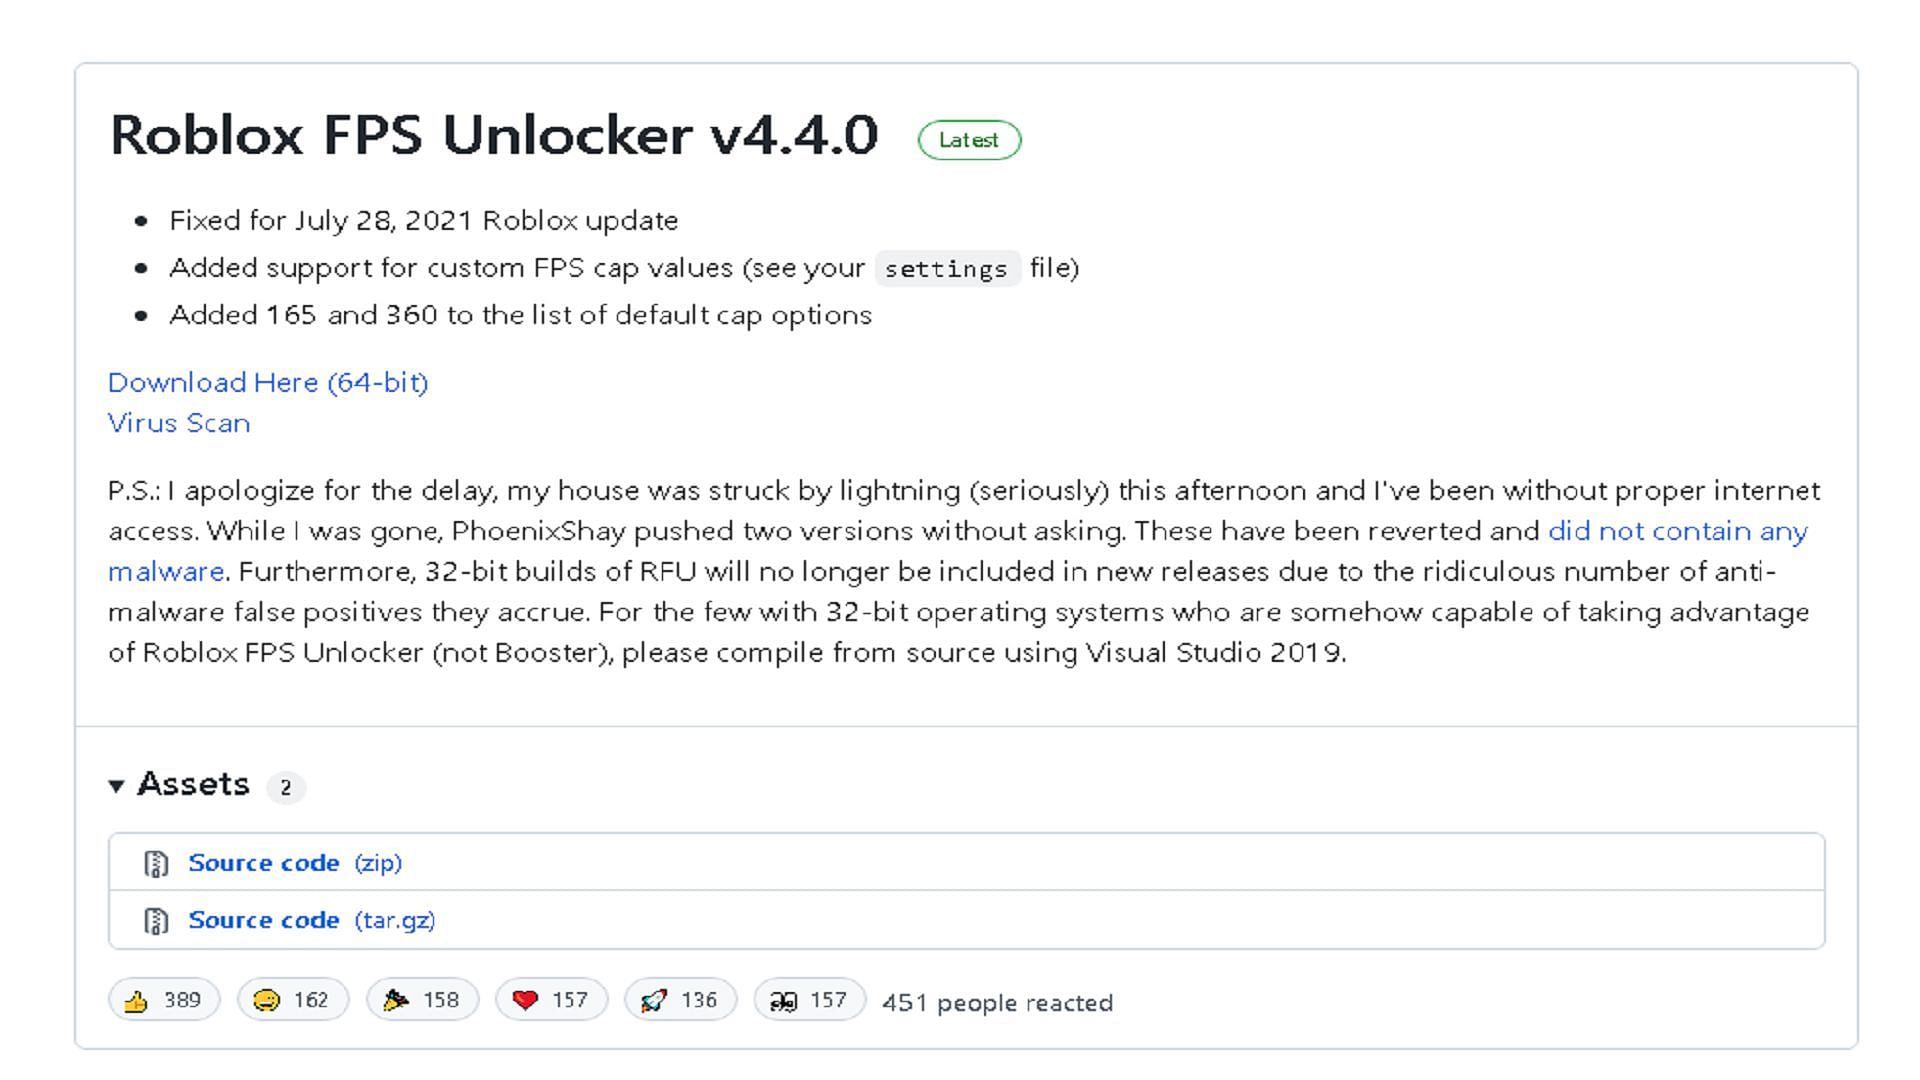 Roblox FPS Unlocker: Is It Now a Virus? — Eightify